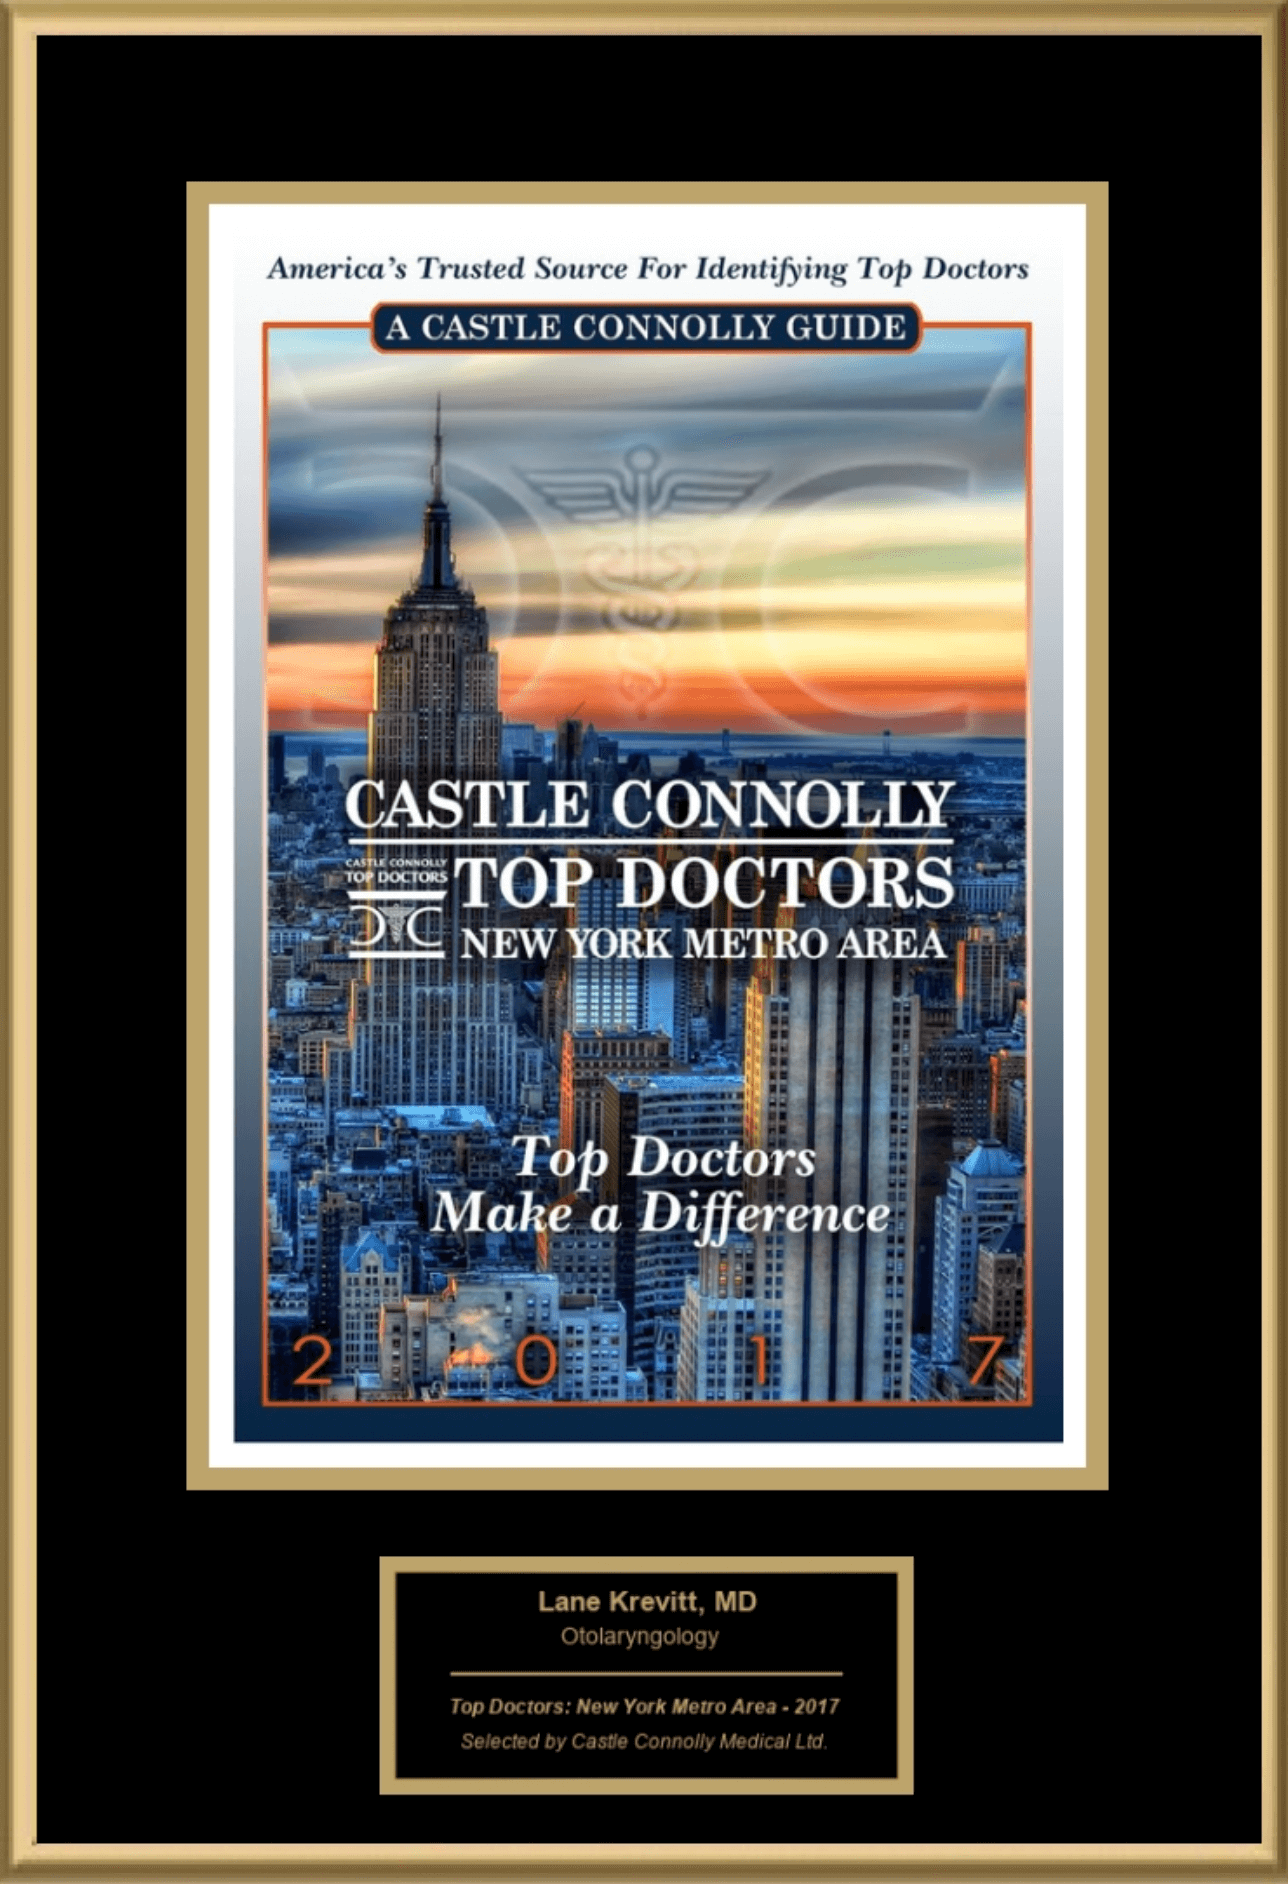 Castle Connolly Top Doctors 2017